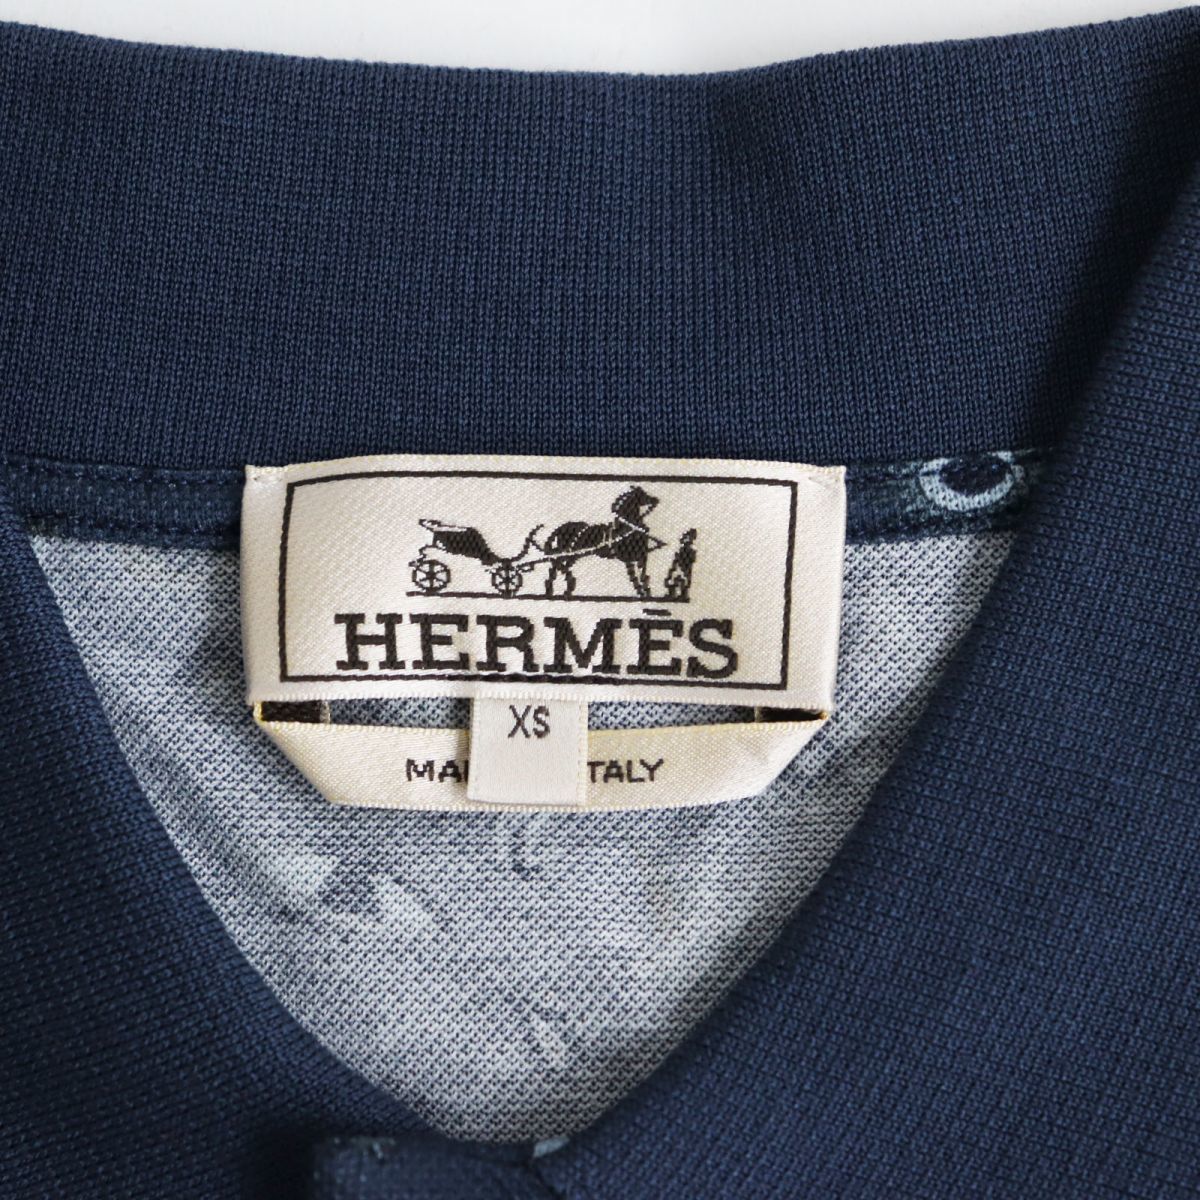  не использовался товар *22SS HERMES Hermes ho воздушный *iz* super H общий рисунок рубашка-поло с коротким рукавом оттенок голубого XS Италия производства стандартный товар с биркой мужской 